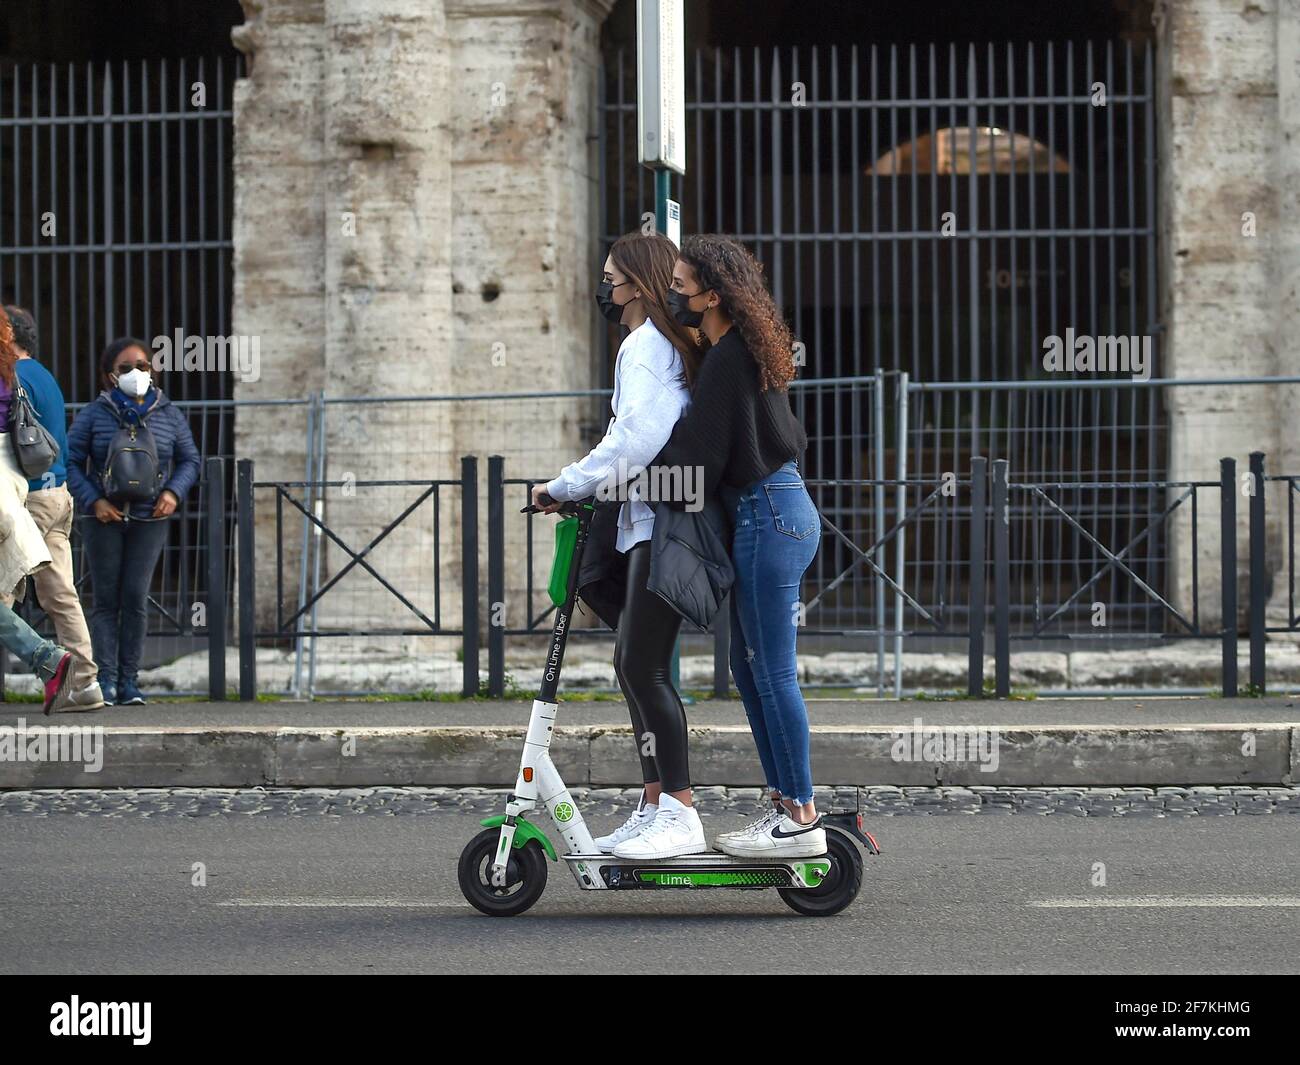 Italia, Roma, 13 de marzo de 2021 : Dos personas montando un scooter  eléctrico cerca de la zona del Coliseo Foto © Fabio  Mazzarella/Sintesi/Alamy Stock Photo Fotografía de stock - Alamy